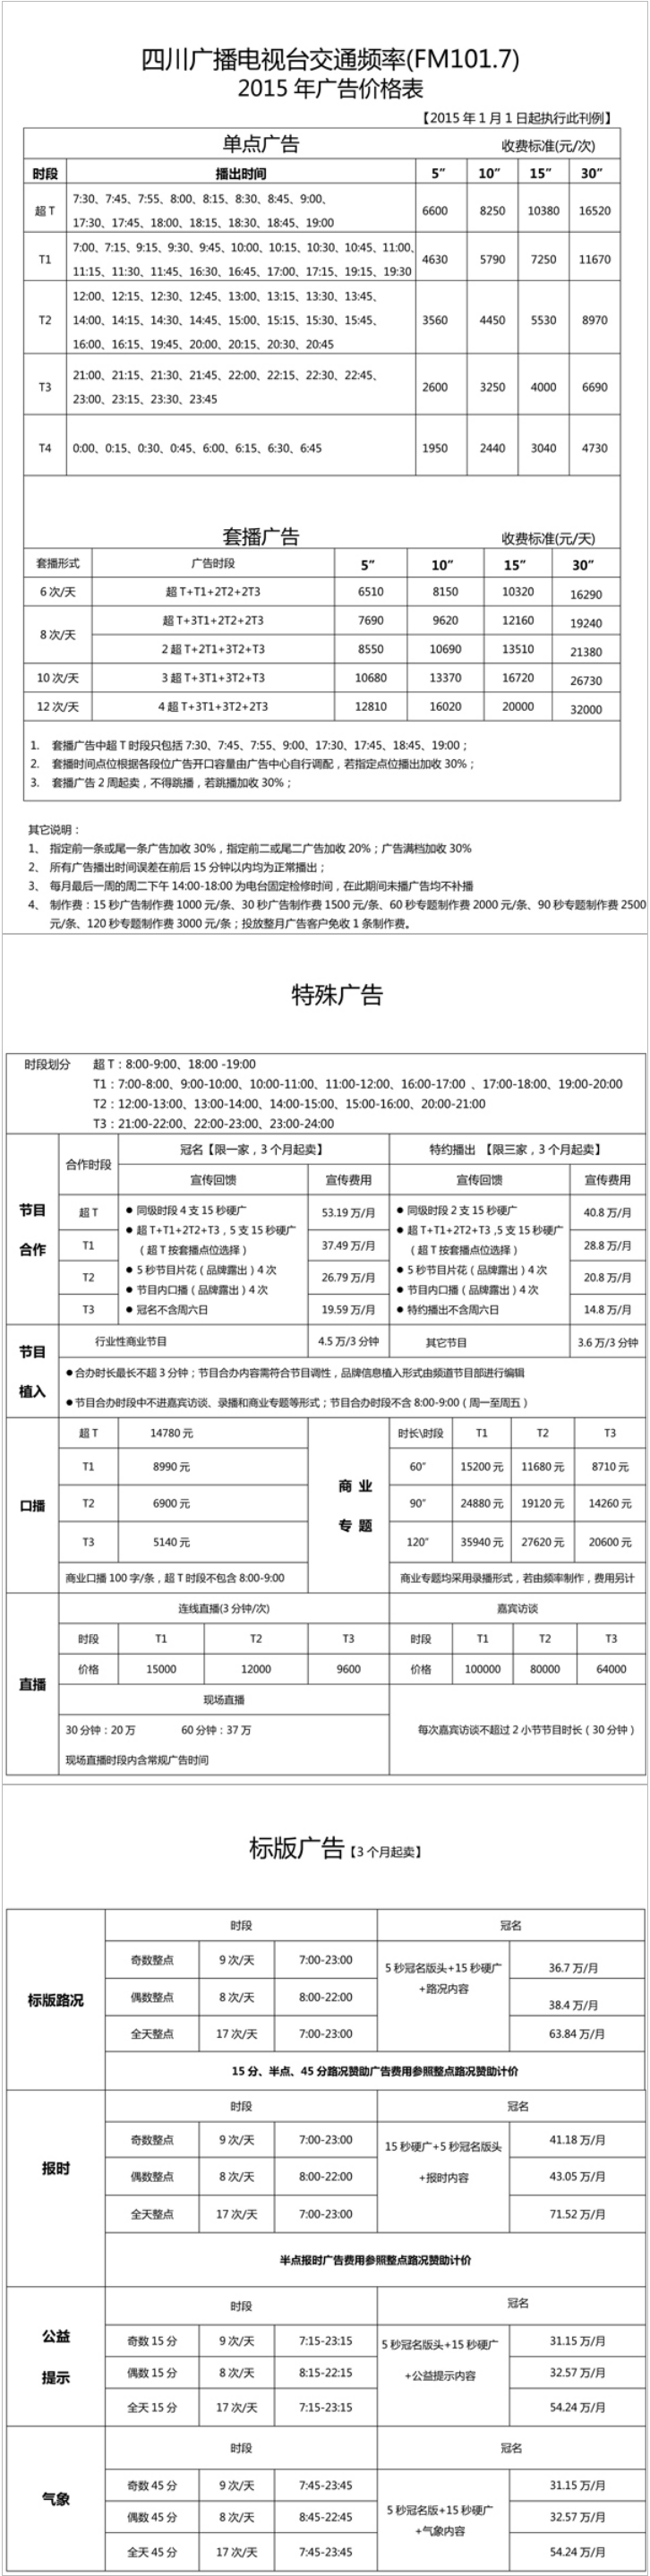 2015四川人民广播电台交通广播 FM101.7广告报价表.png